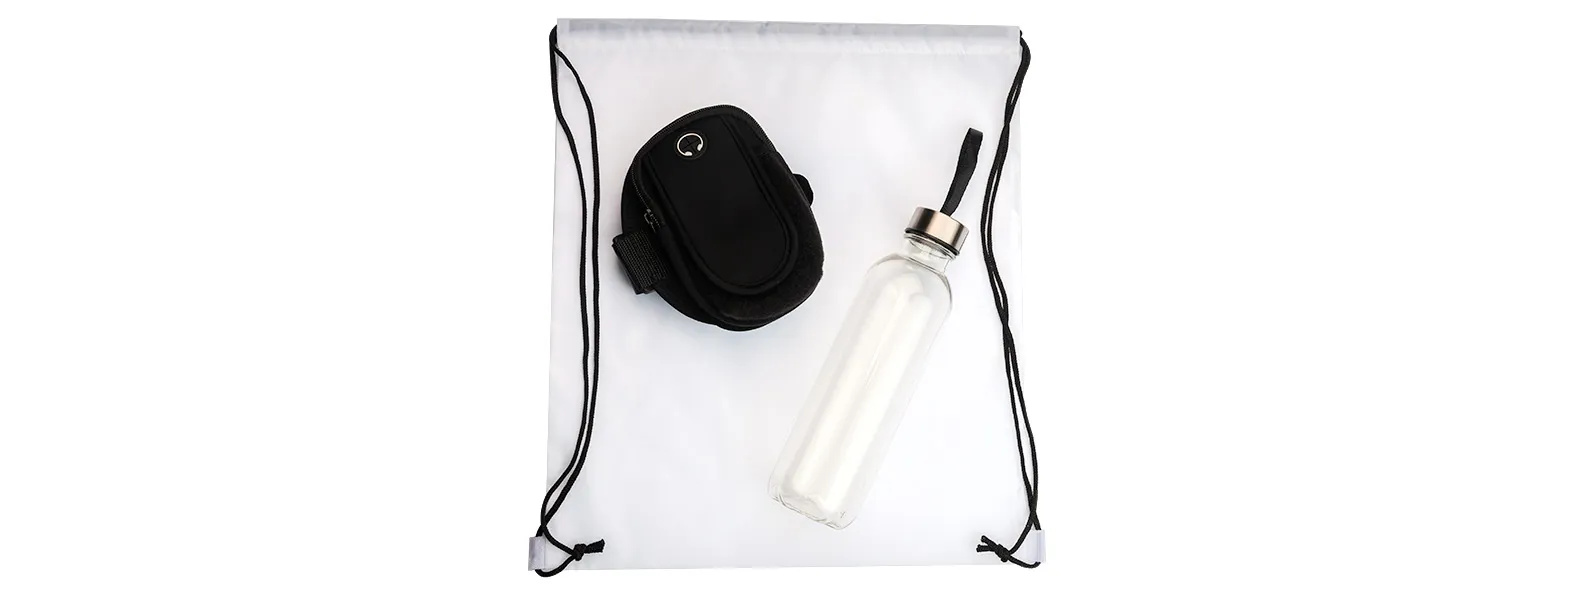 Kit boas vindas. Conta com mochila em nylon 420 branca; garrafa pet transparente e braçadeira esportiva para celular.